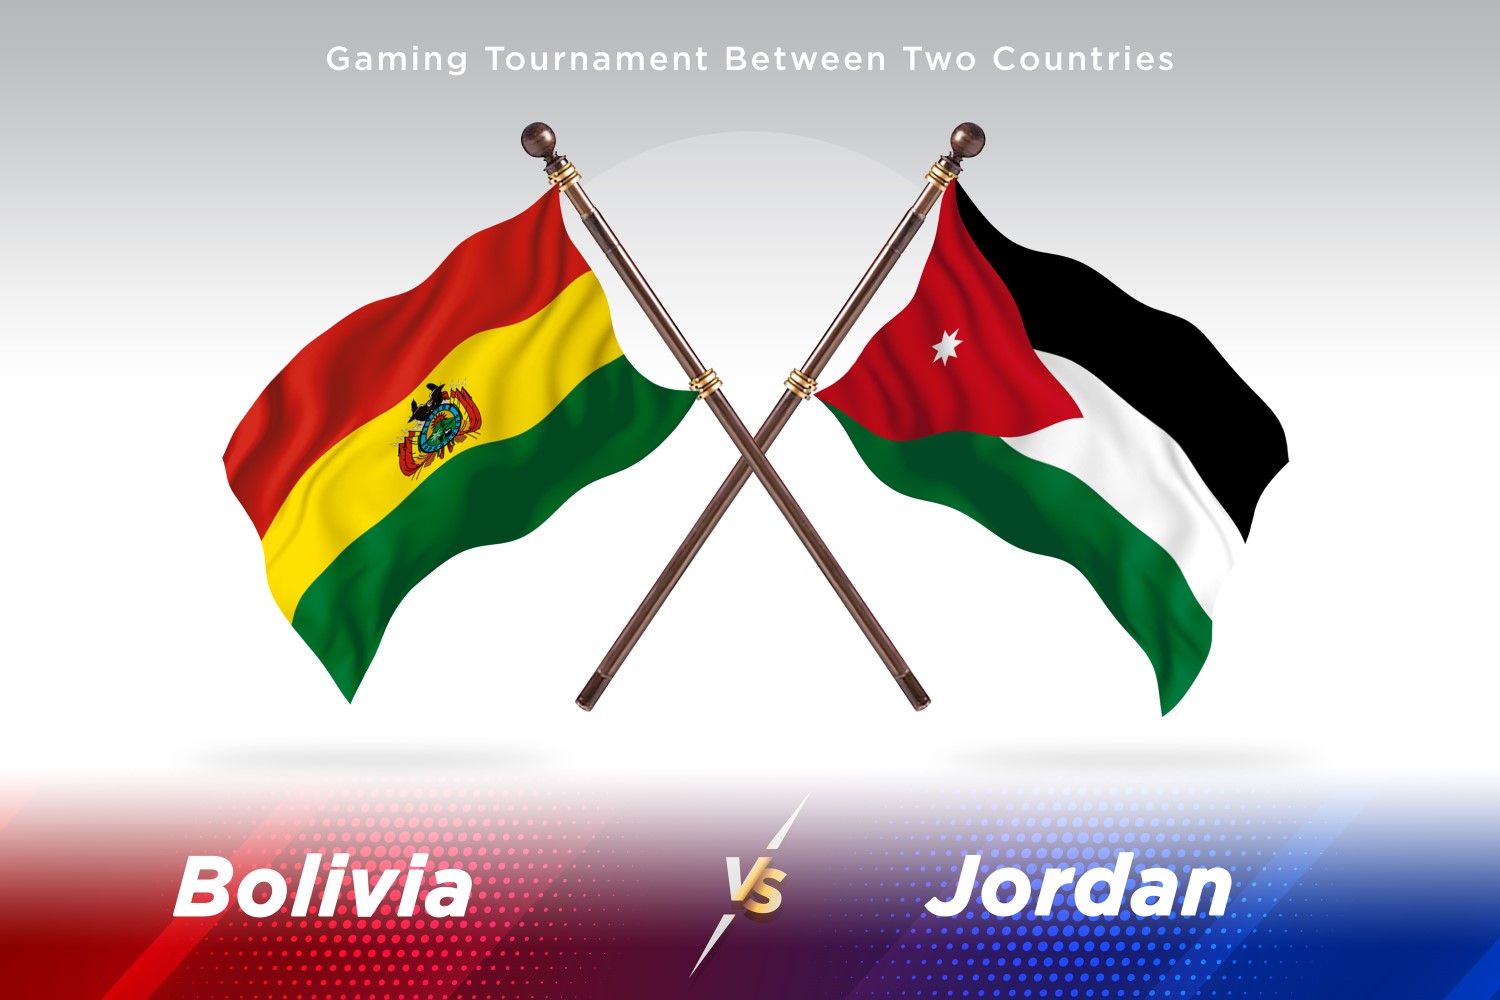 Bolivia versus Jordan Two Flags